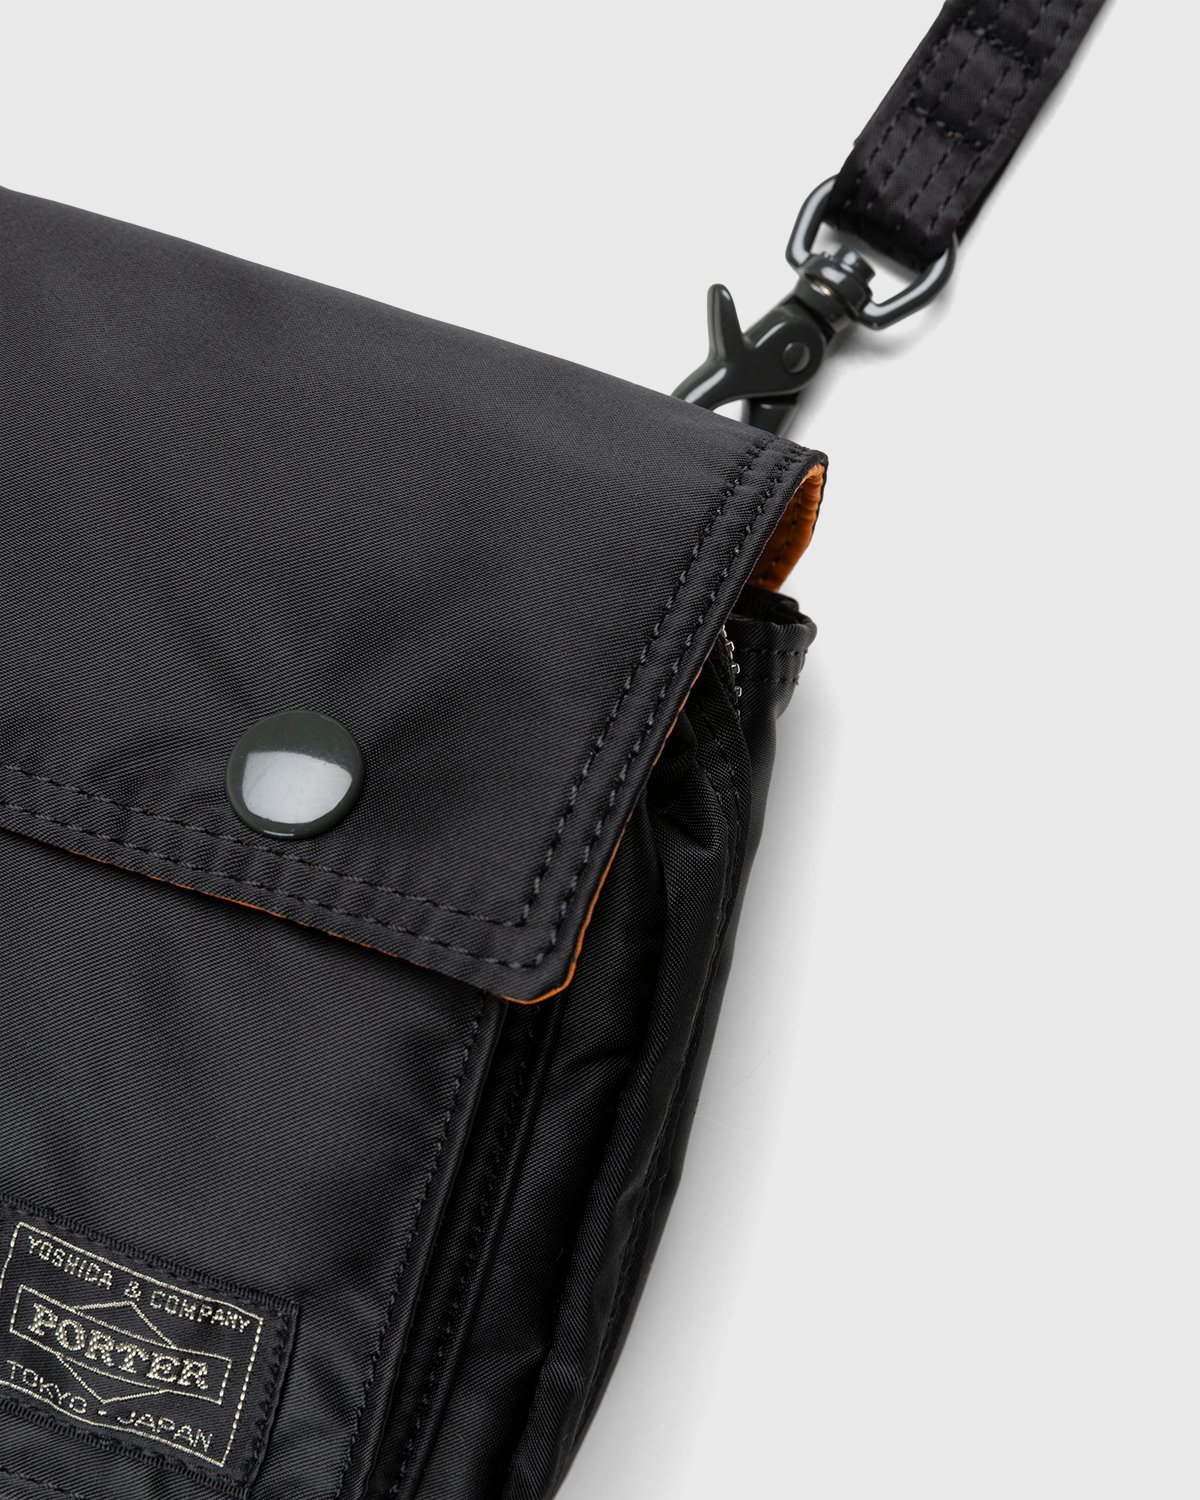 Porter-Yoshida & Co. - Tanker Clip Shoulder Bag Black - Accessories - Black - Image 3